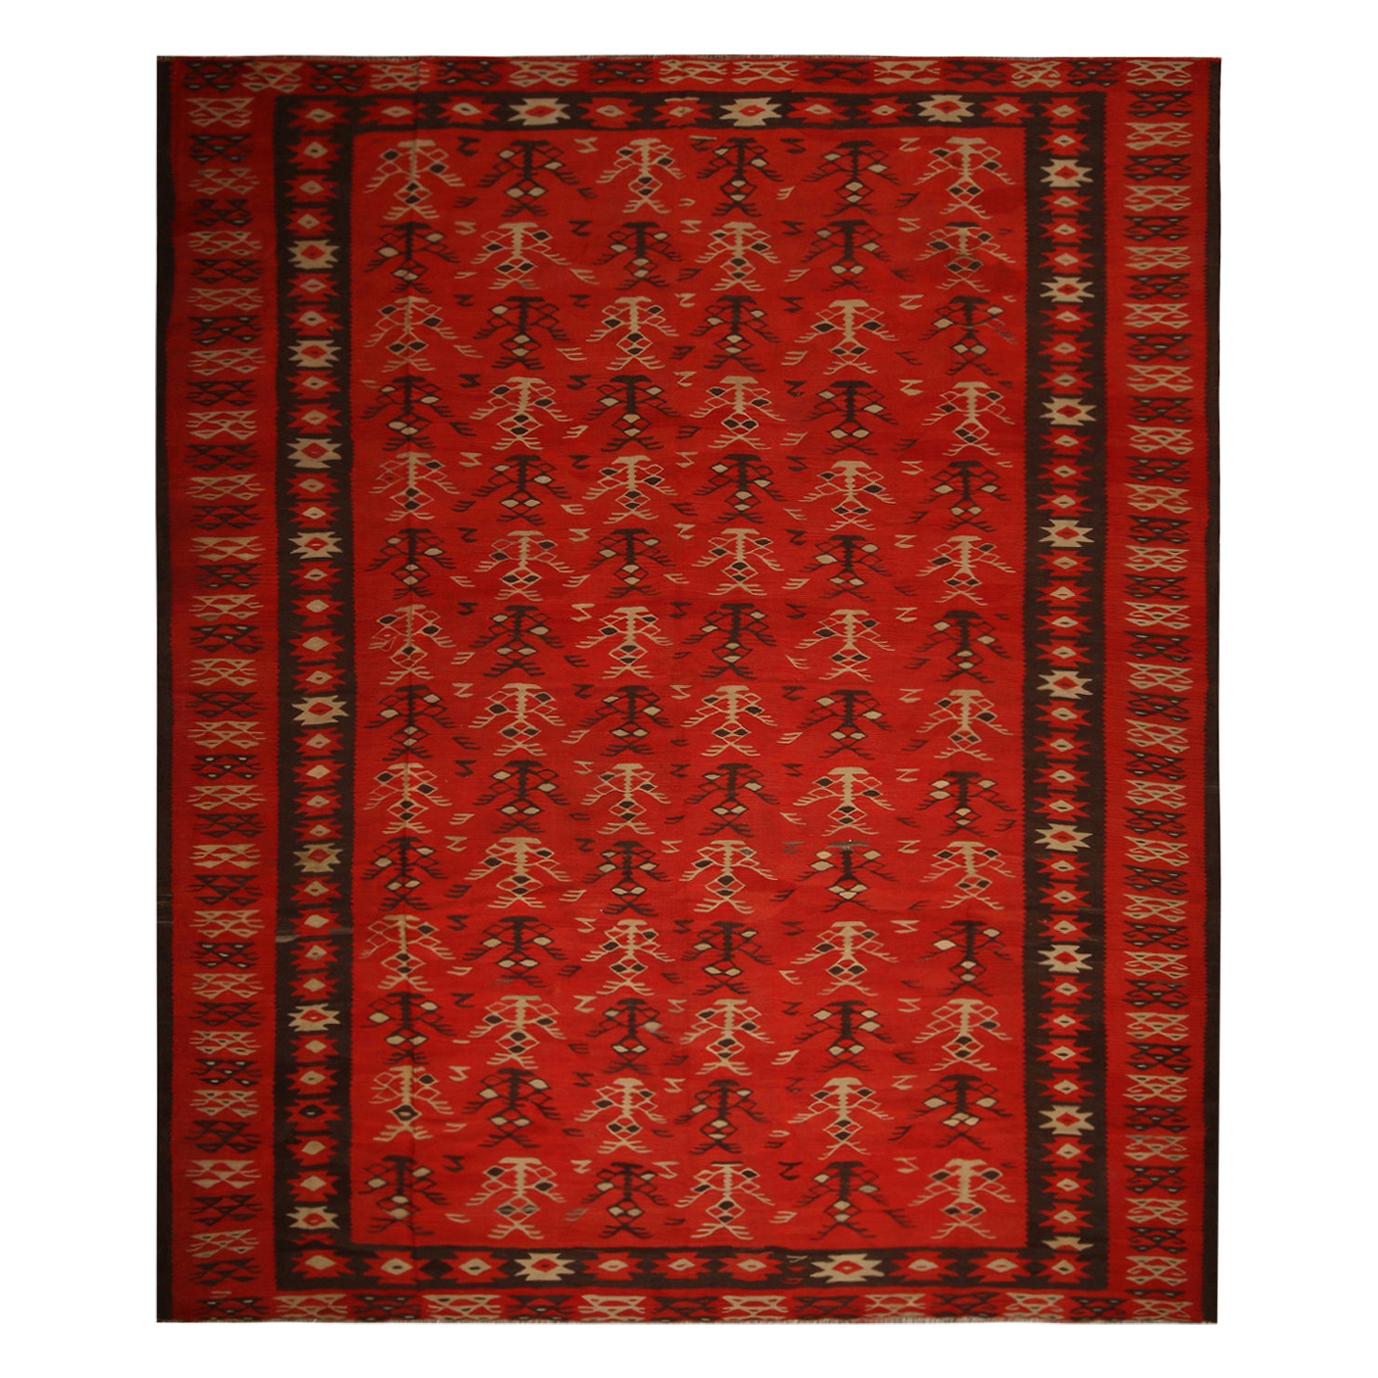 Handwoven Vintage Tribal Kilim in Red Brown Geometric Patterns by Rug & Kilim